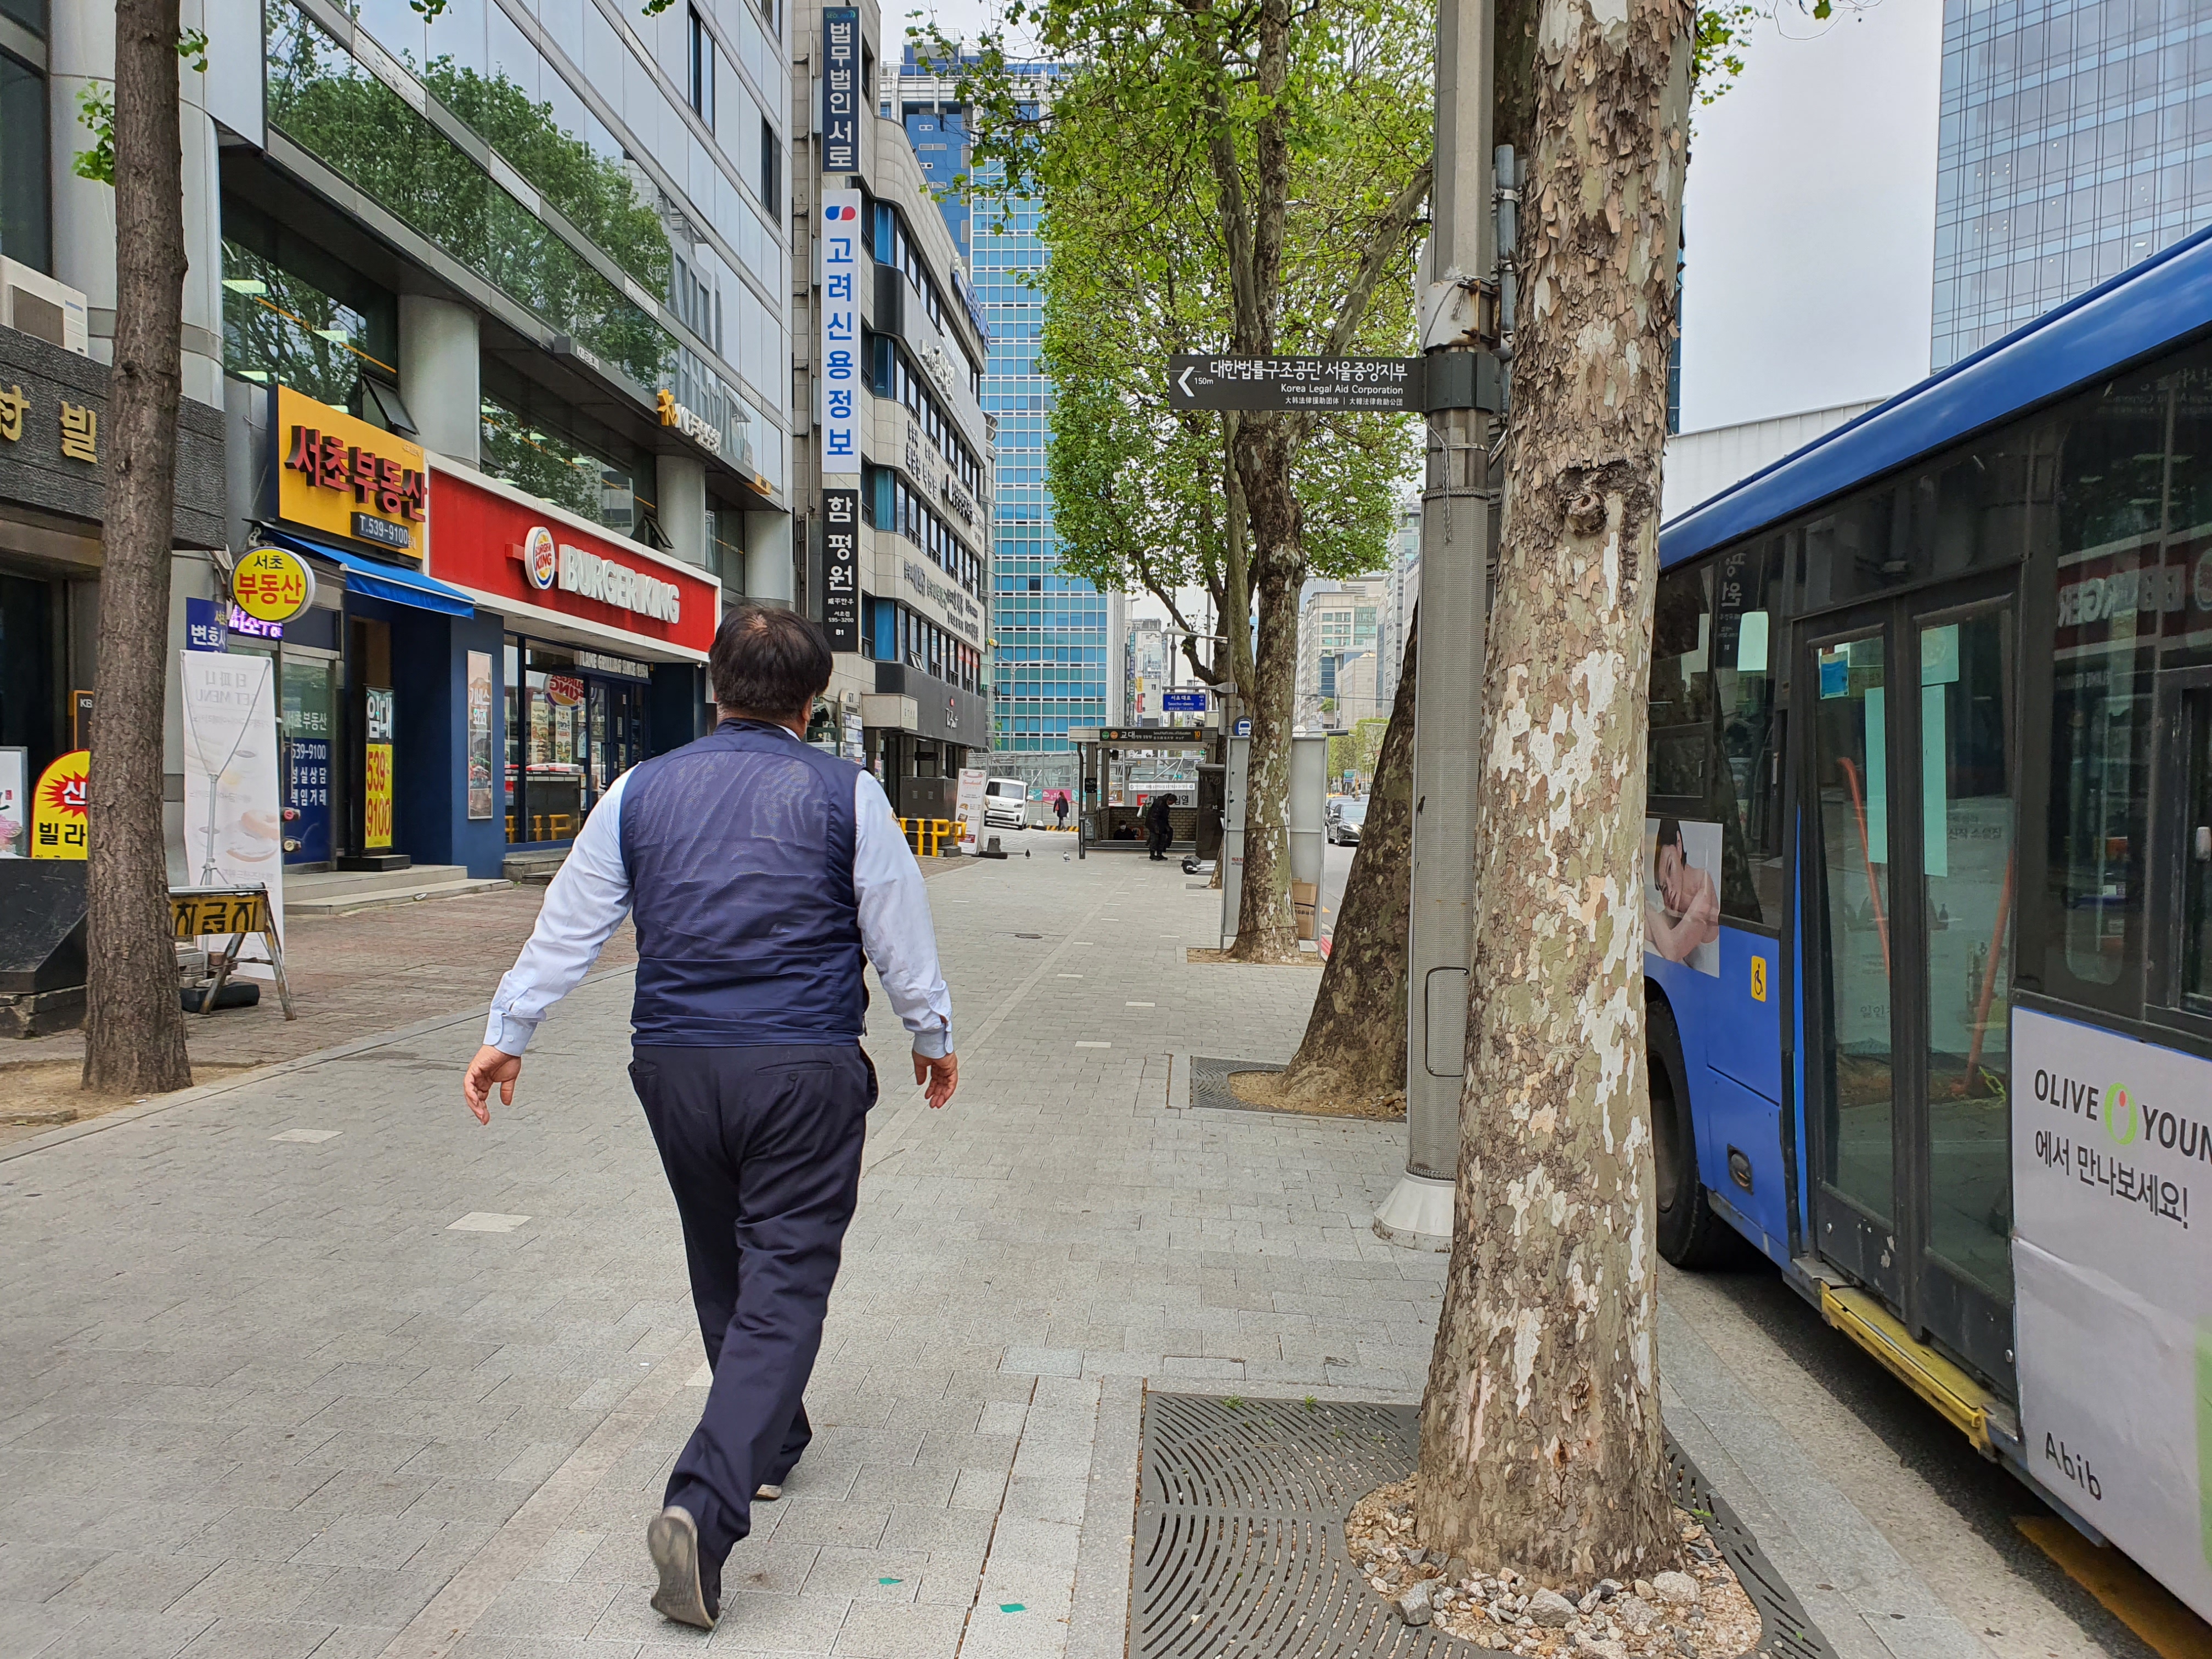 742번 버스 기사 이수희(55)씨가 29일 오전 8시 30분쯤 버스 승객들에게 조심스럽게 양해를 구한 뒤 지하철 교대역 화장실로 뛰어가고 있다. 최영권 기자 story@seoul.co.kr